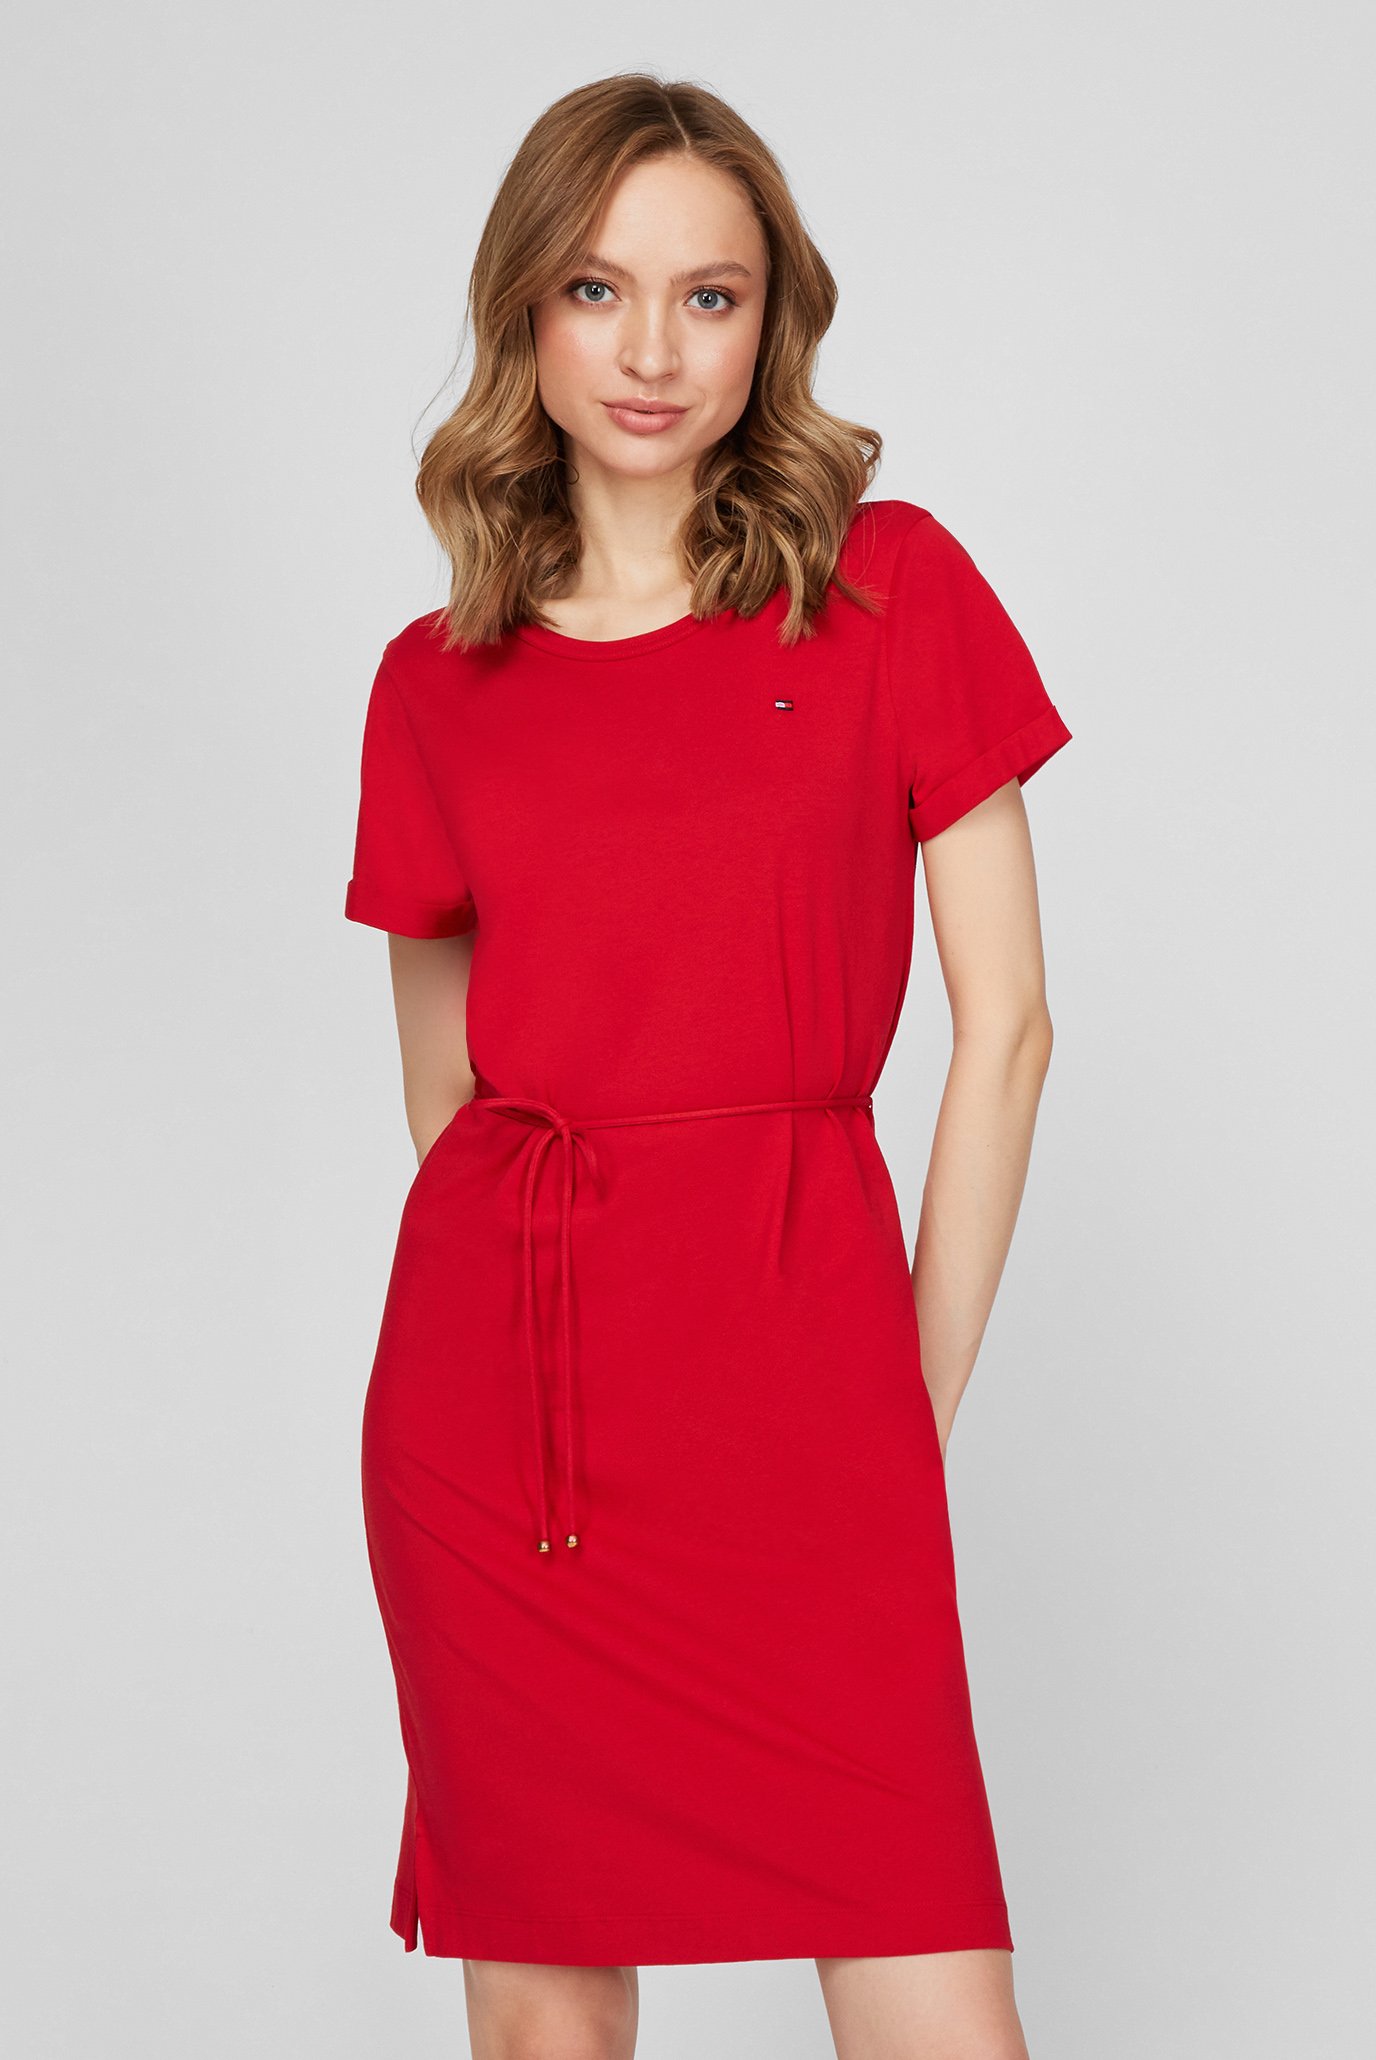 Жіноча червона сукня TH COOL C-NK 1